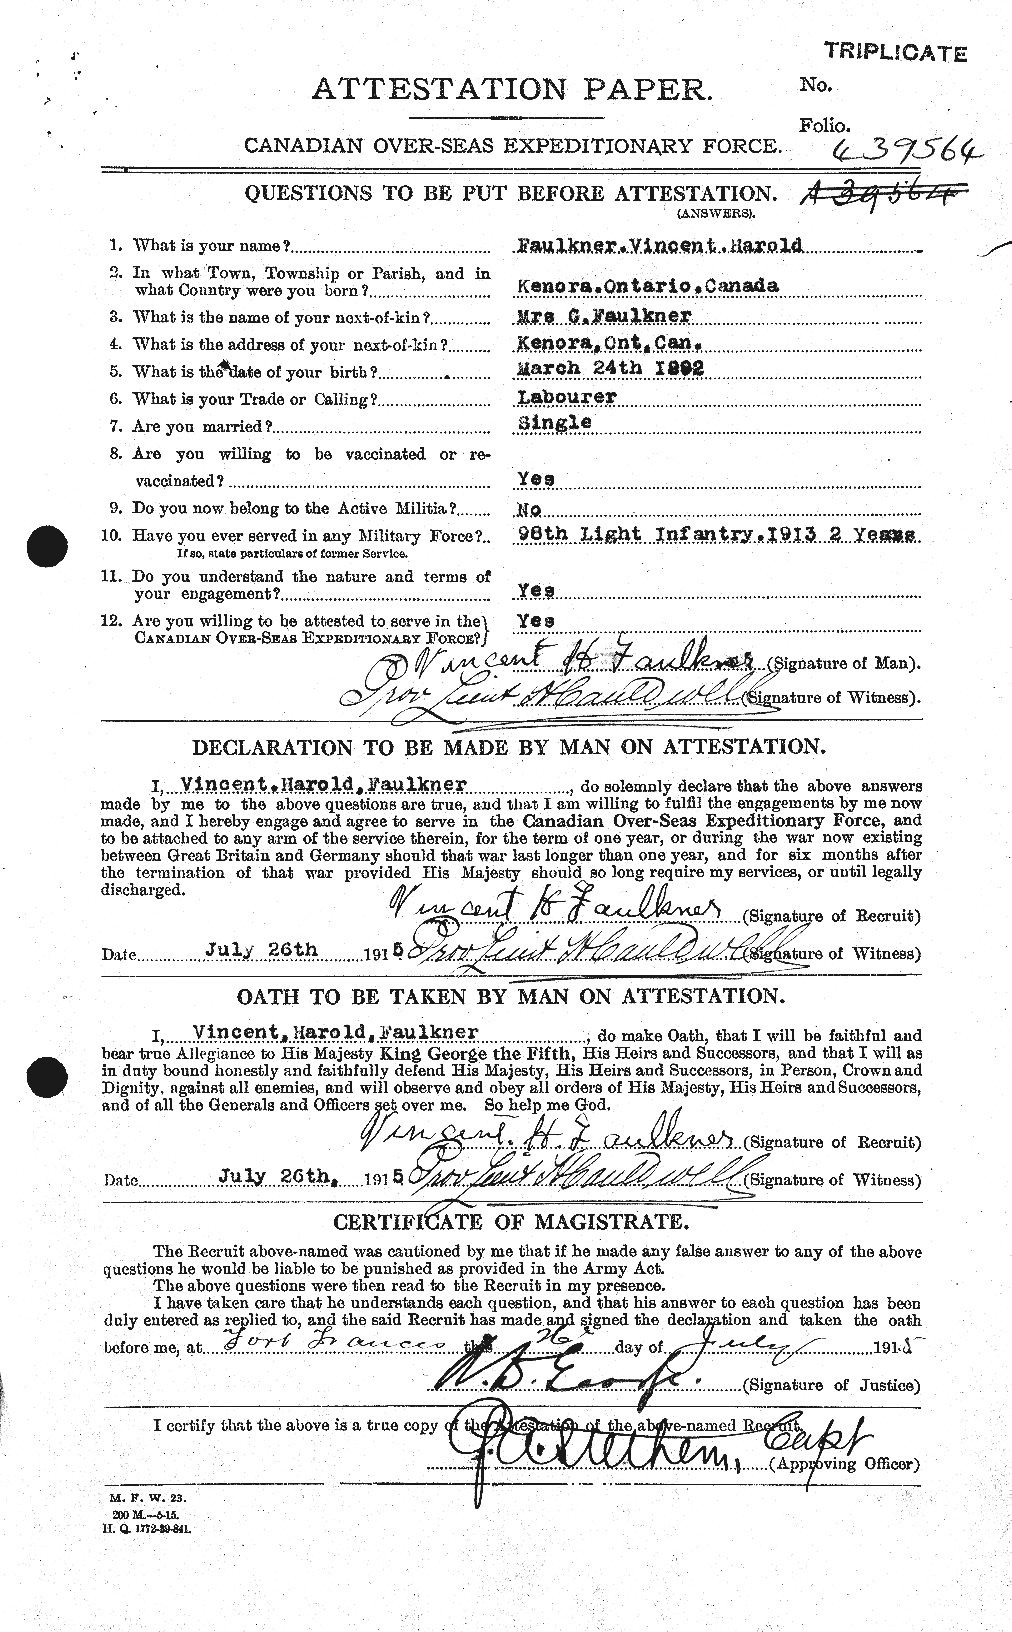 Dossiers du Personnel de la Première Guerre mondiale - CEC 321315a